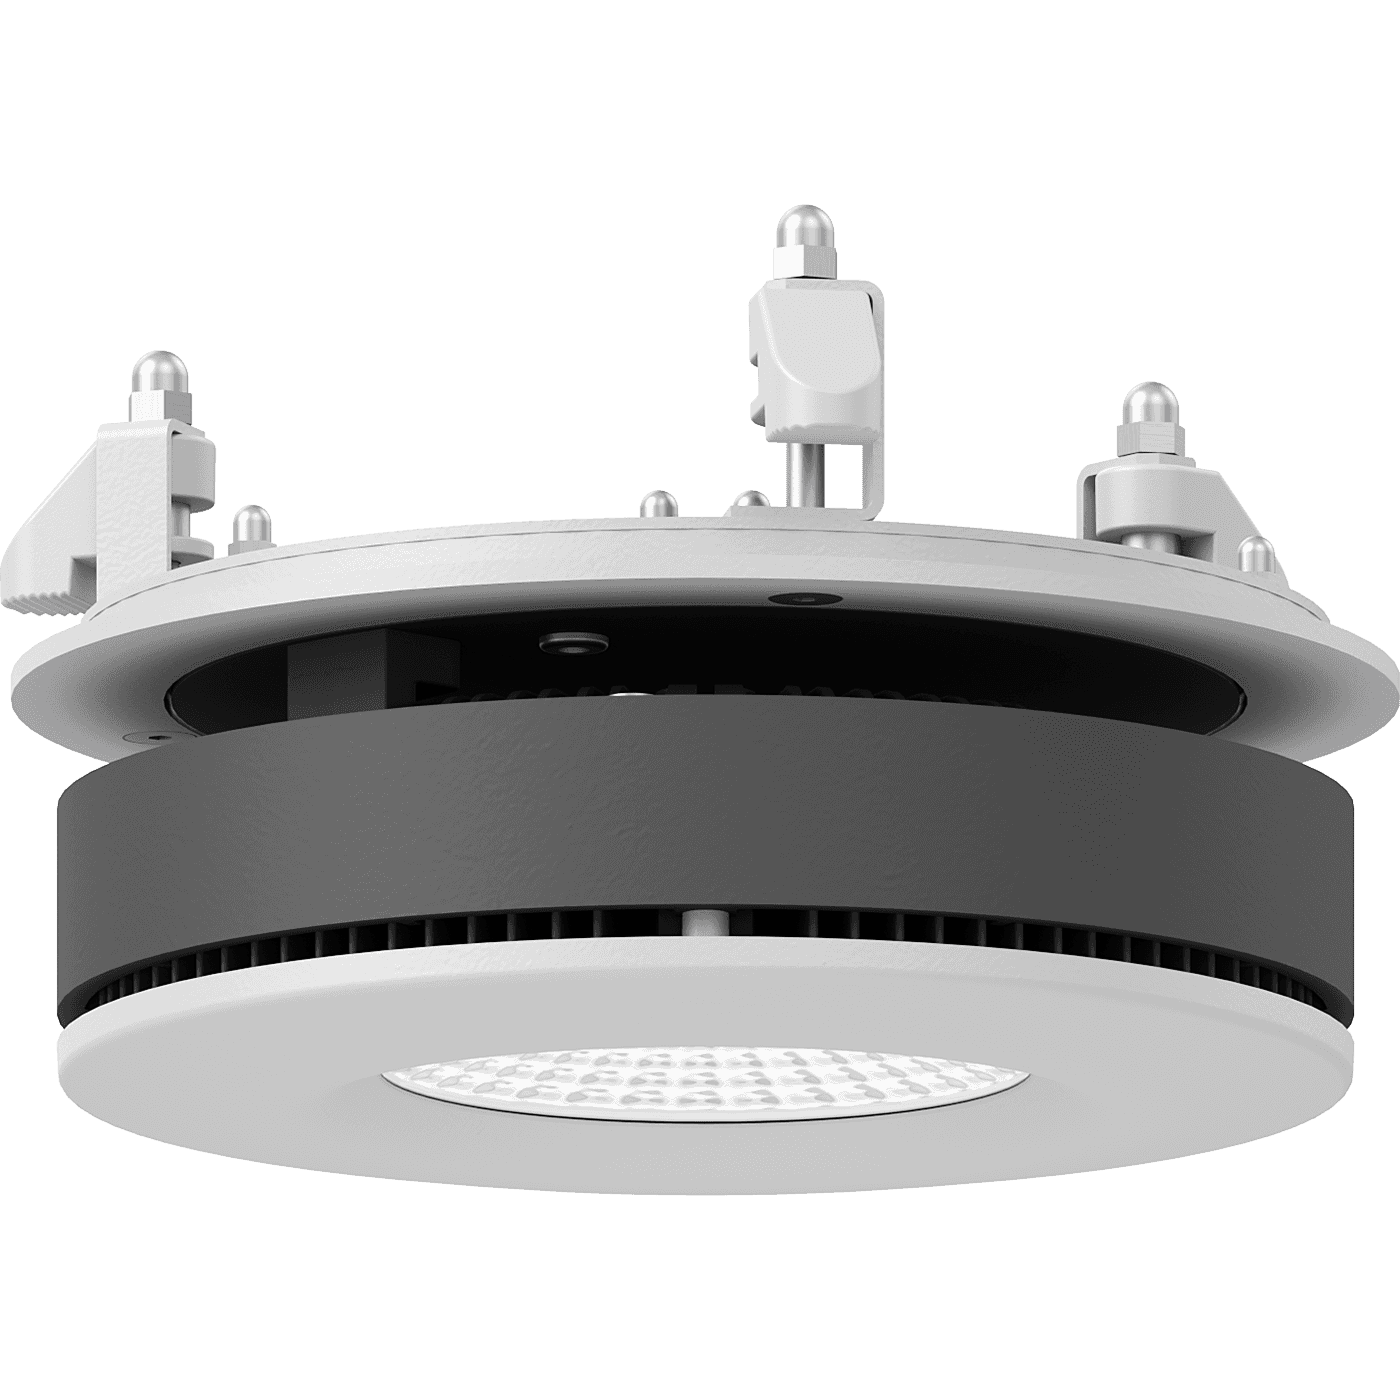 даунлайты UFO DL LED 35 D24 4000K, артикул 1170001250